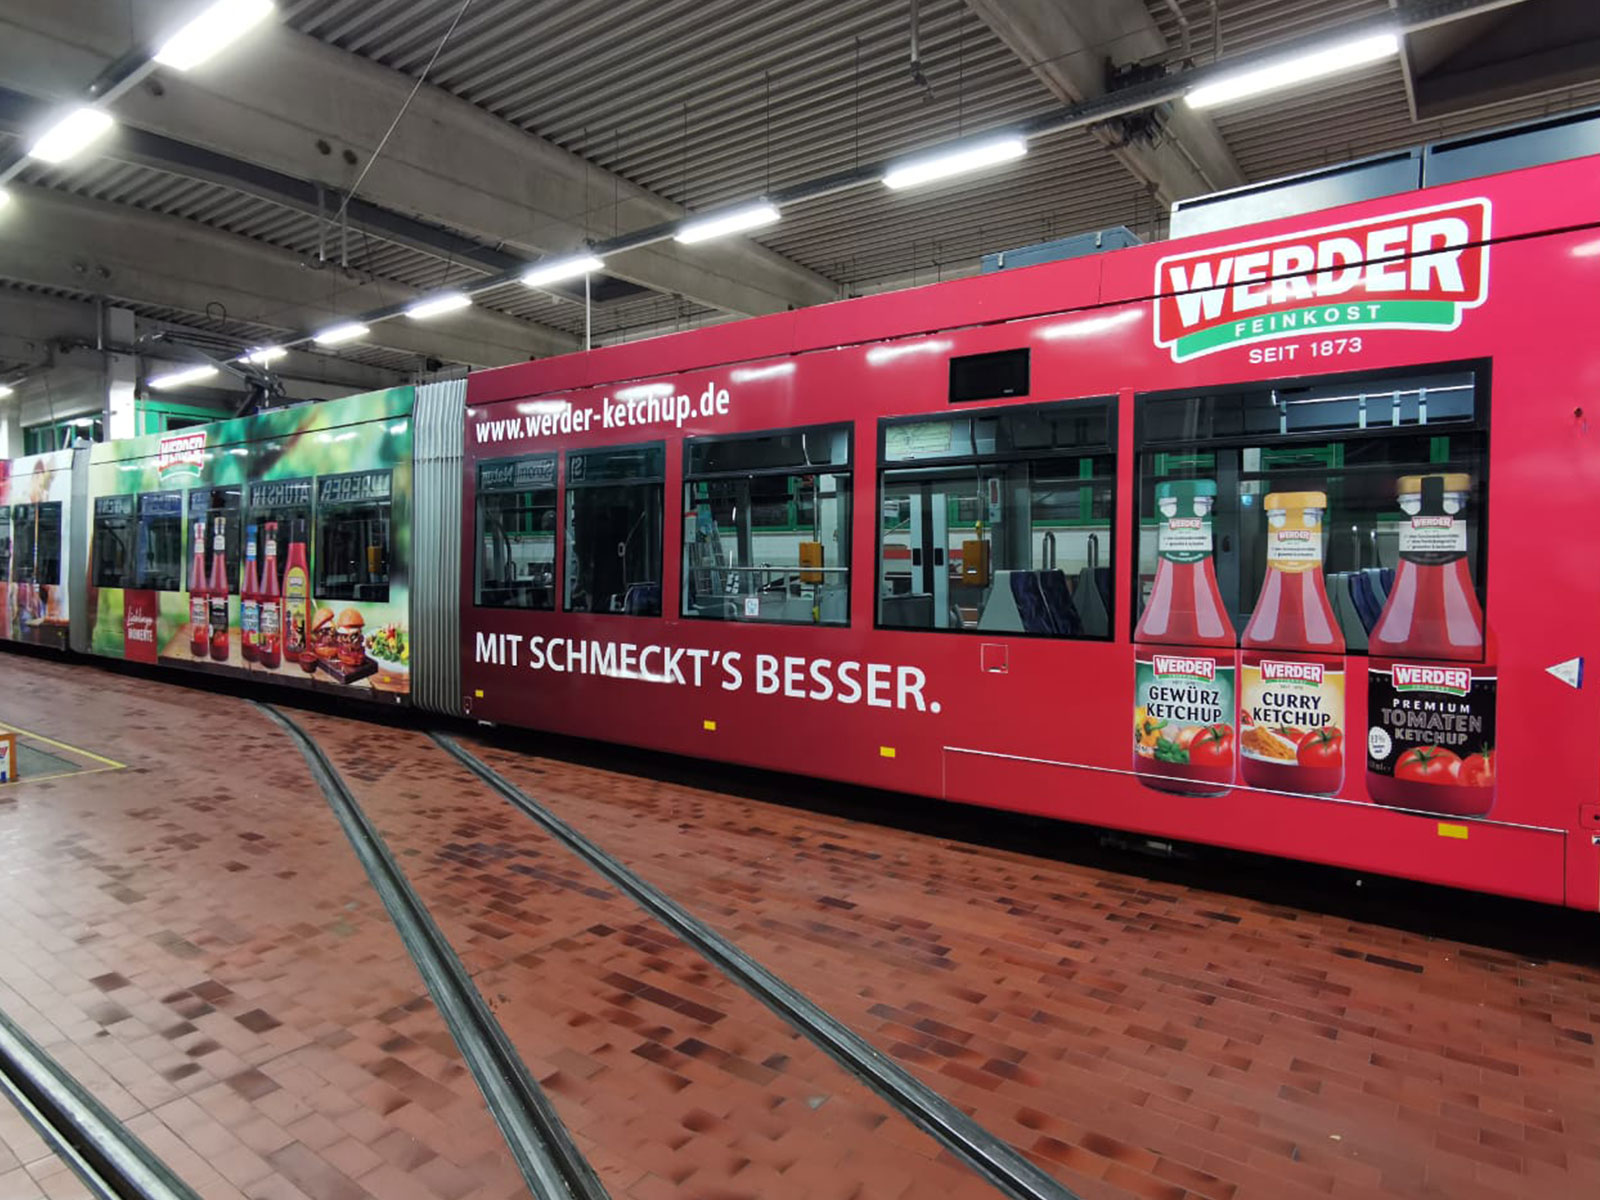 Bus- und Bahnwerbung für Werder Feinkost